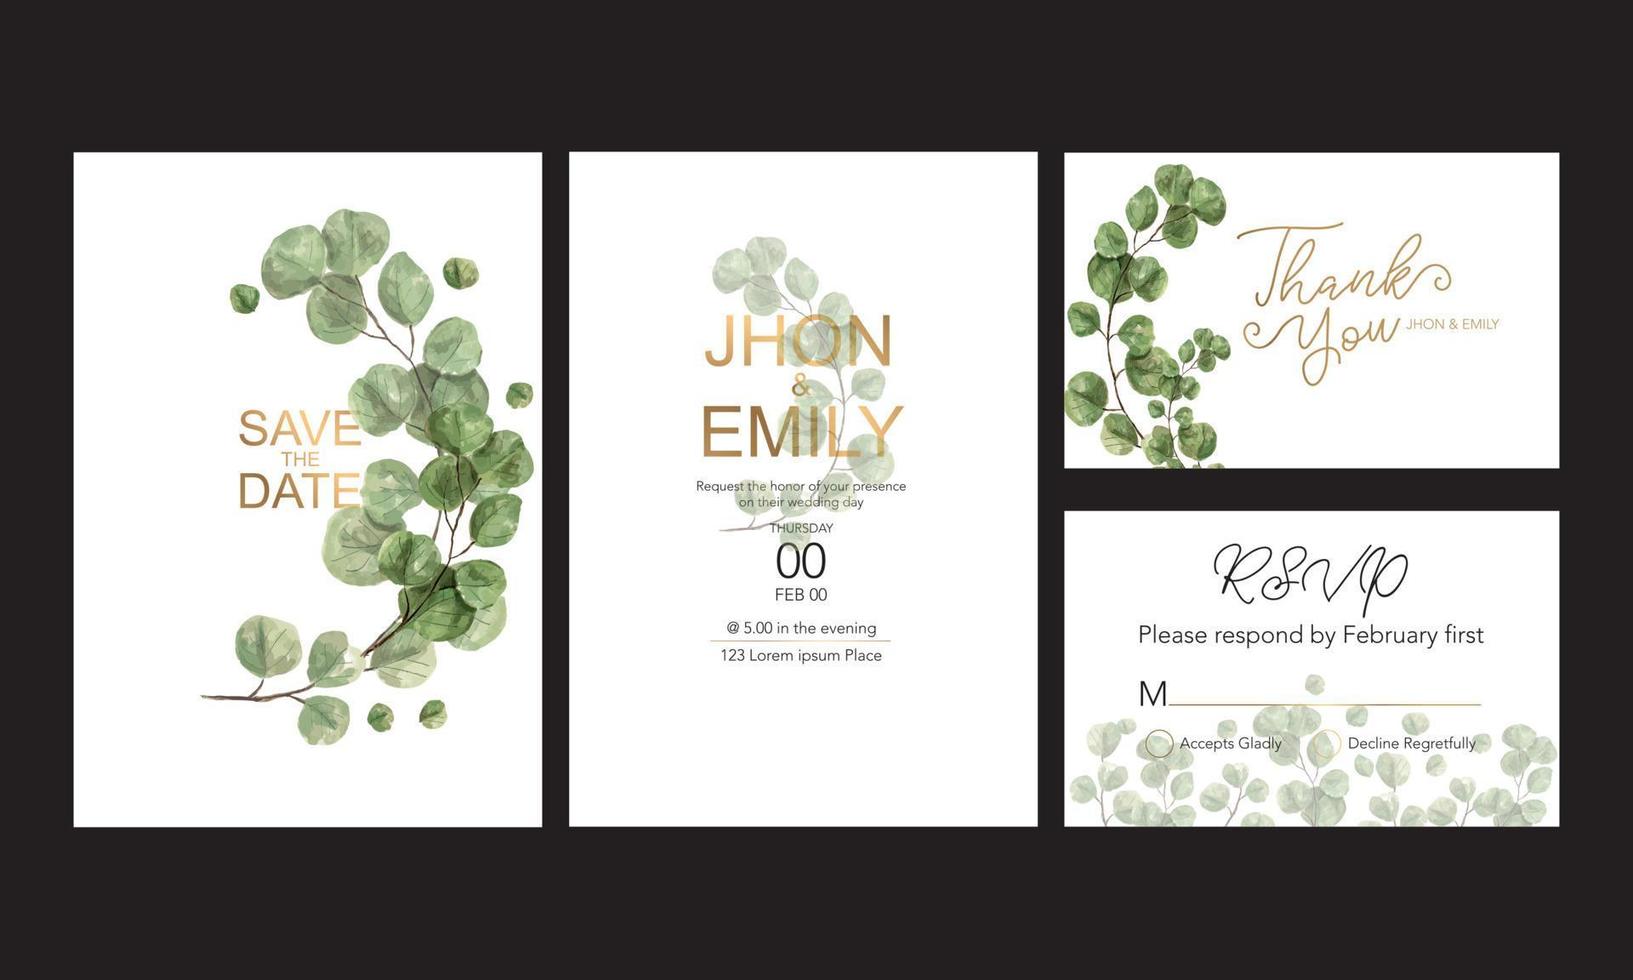 tarjeta de invitación de boda, invitación floral gracias, diseño de tarjeta moderna rsvp, hoja de eucalipto verde eucalipto verde. vector